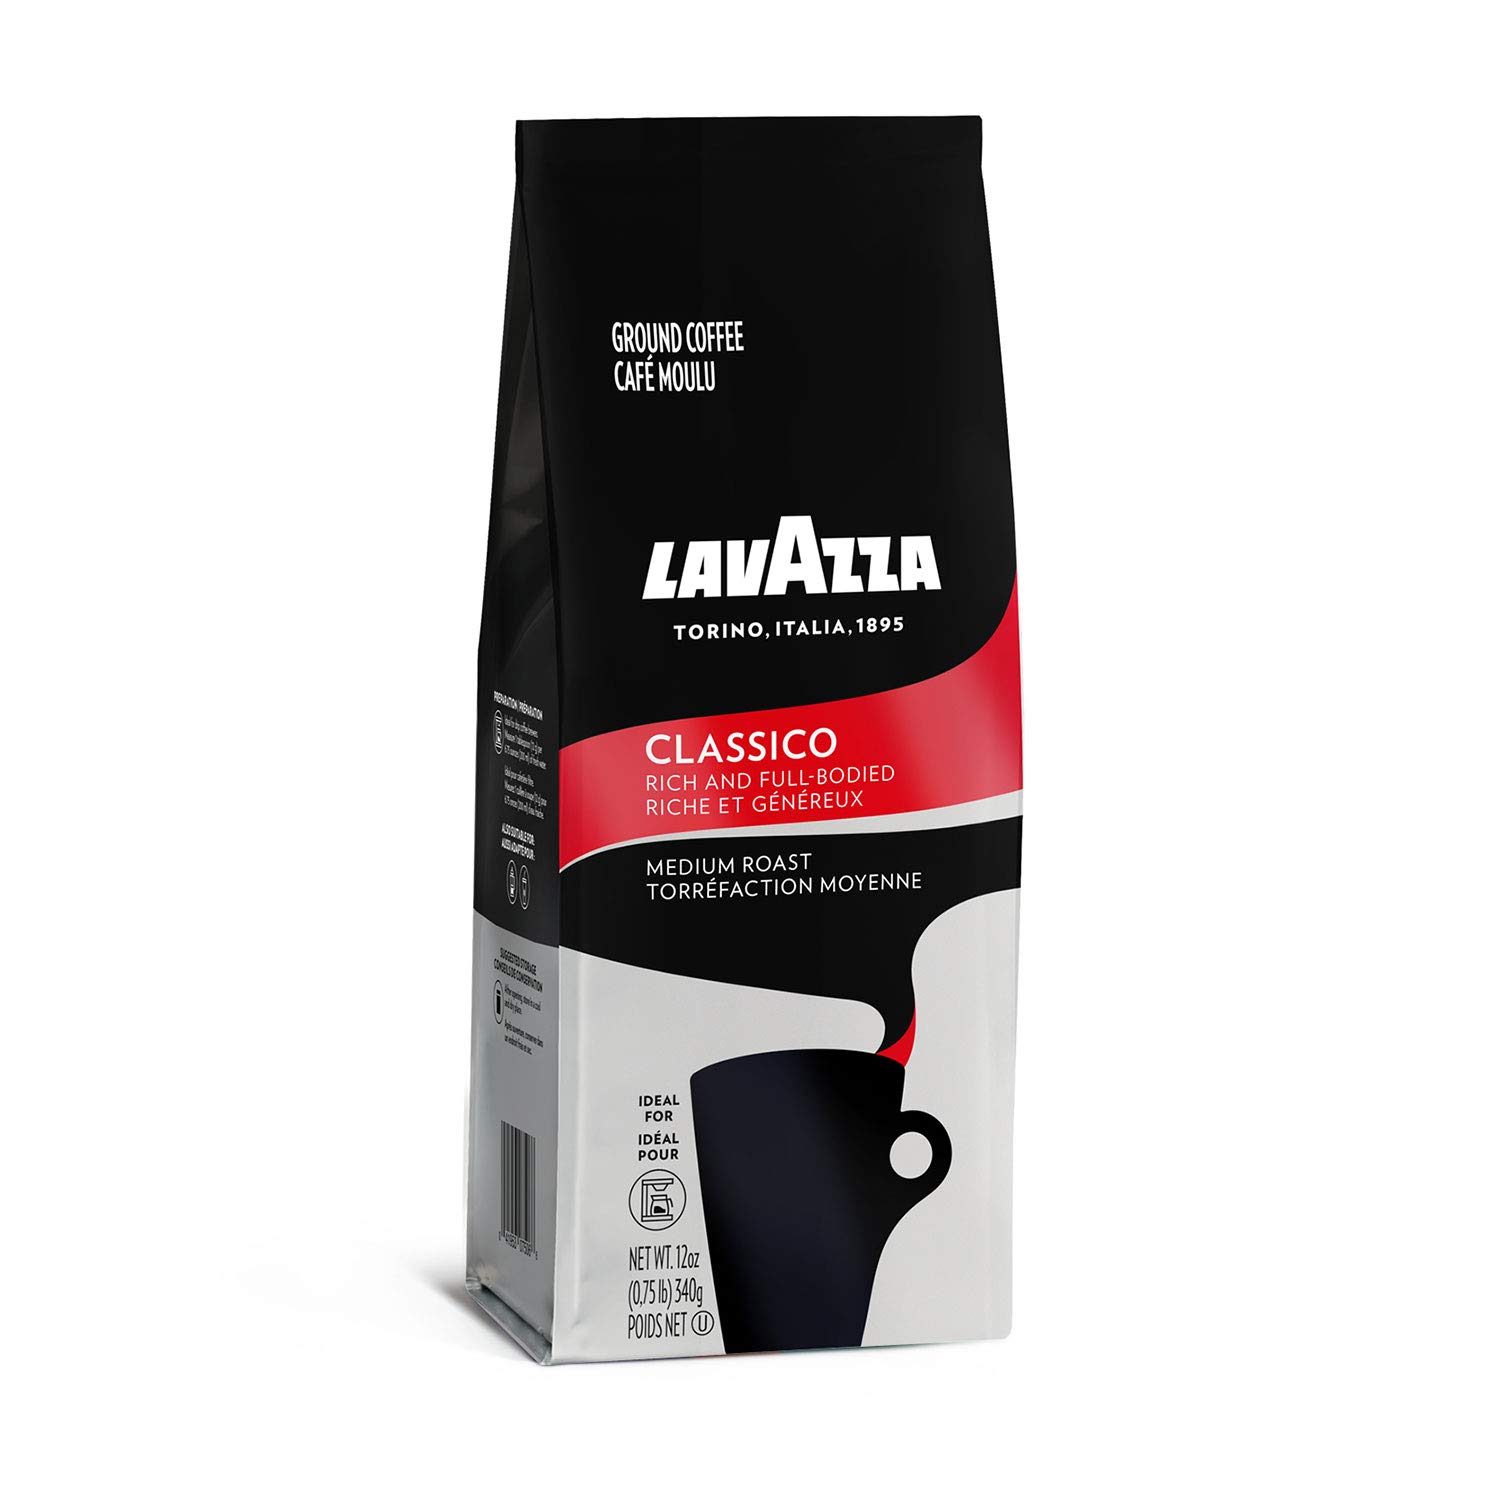 Cà phê bột Lavazza Classico Ground Coffee Blend, rang vừa - thích hợp french press, pour over, hand drip- Độ đậm : 5/10